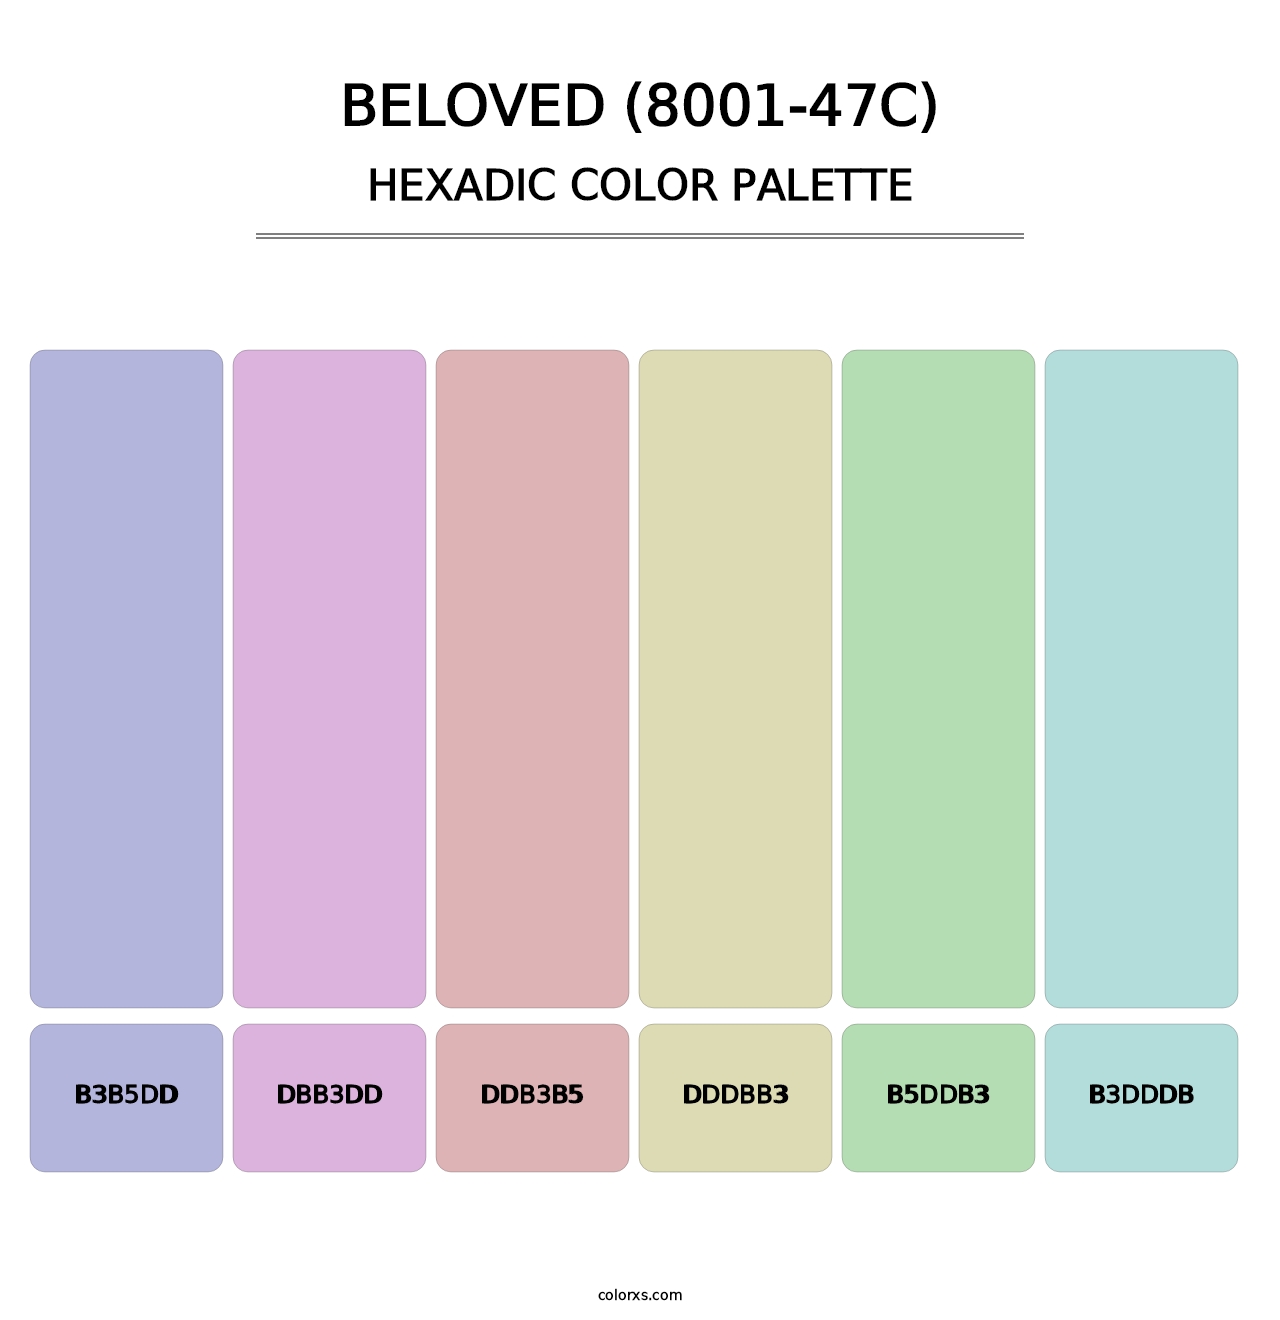 Beloved (8001-47C) - Hexadic Color Palette